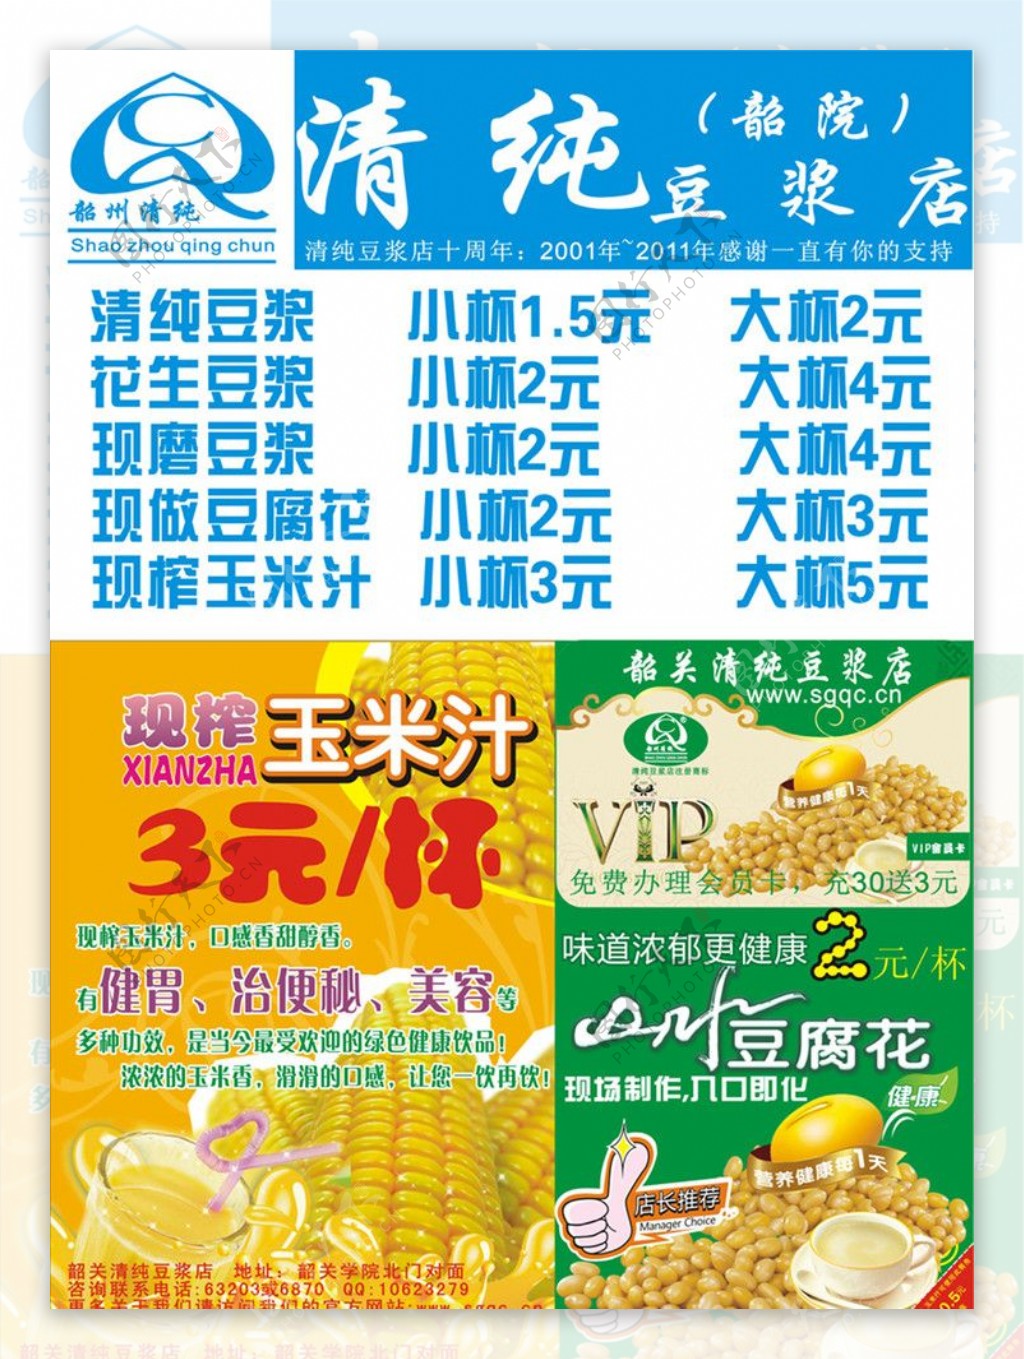 清纯豆浆店201111DM广告图片